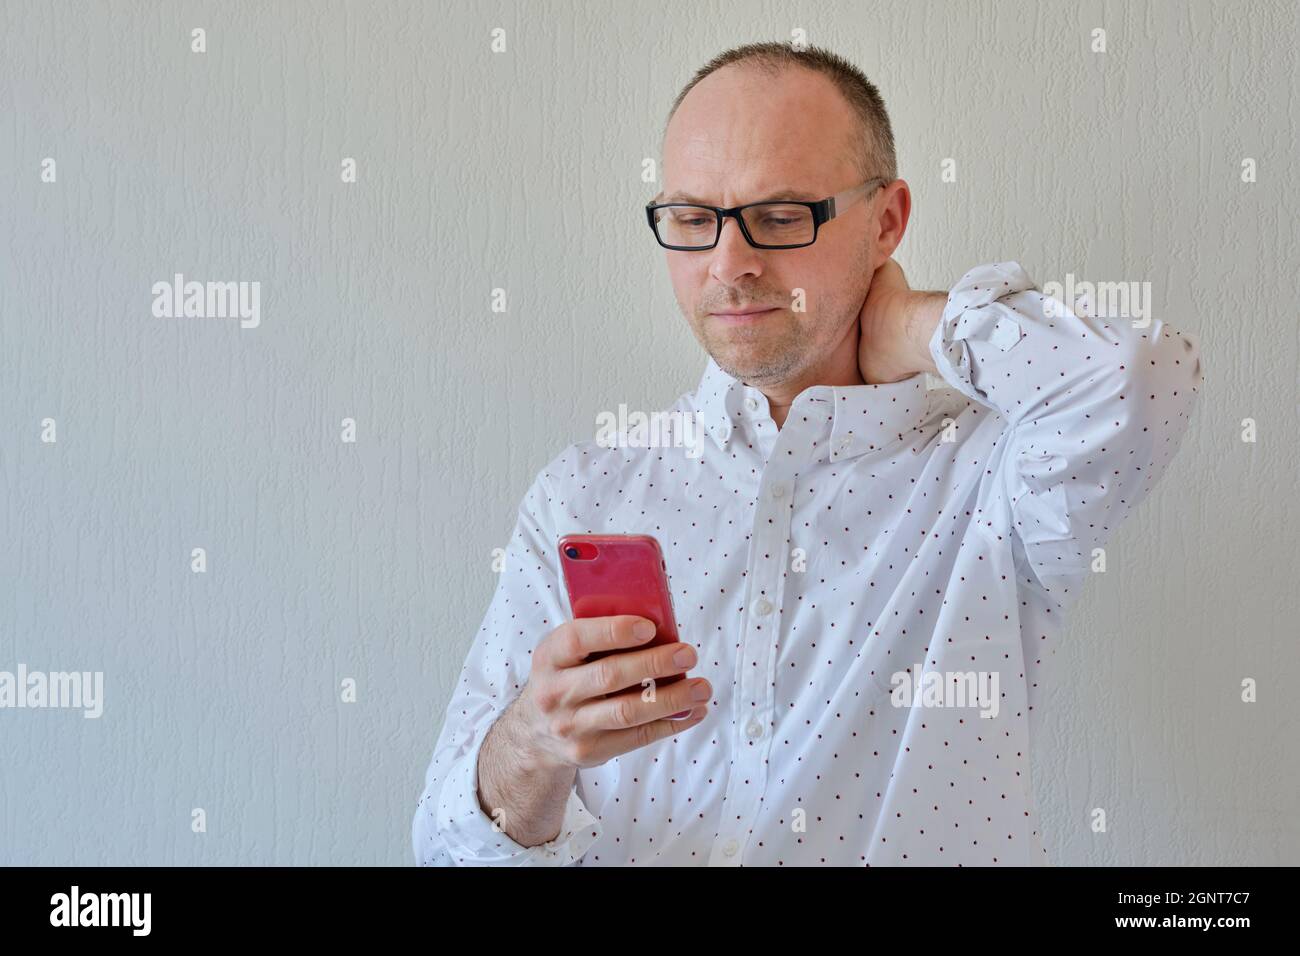 Halblange Sicht auf einen Mann mit einem Smartphone. Weißer Hintergrund mit Platz für Text oder Anmerkungen. Ein hübscher Mann schaut auf sein Telefon. Stockfoto